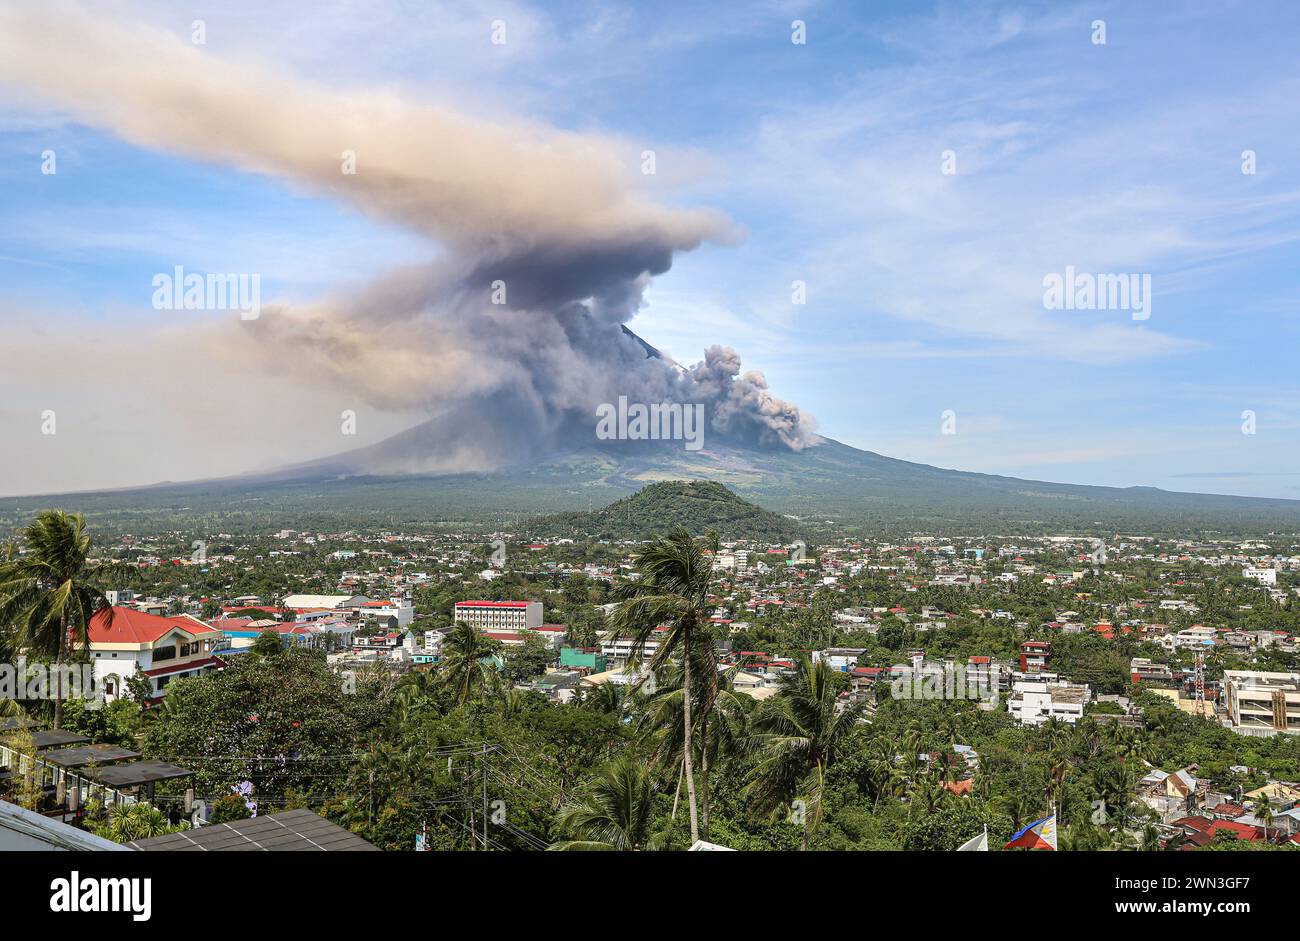 Rauchwolke und pyroklastische Strömung ziehen die Flanken des Mayon-Vulkans bei Eruption hinunter, Legazpi, Philippinen, Nuée ardente, pyroklastischer Dichtestrom Stockfoto